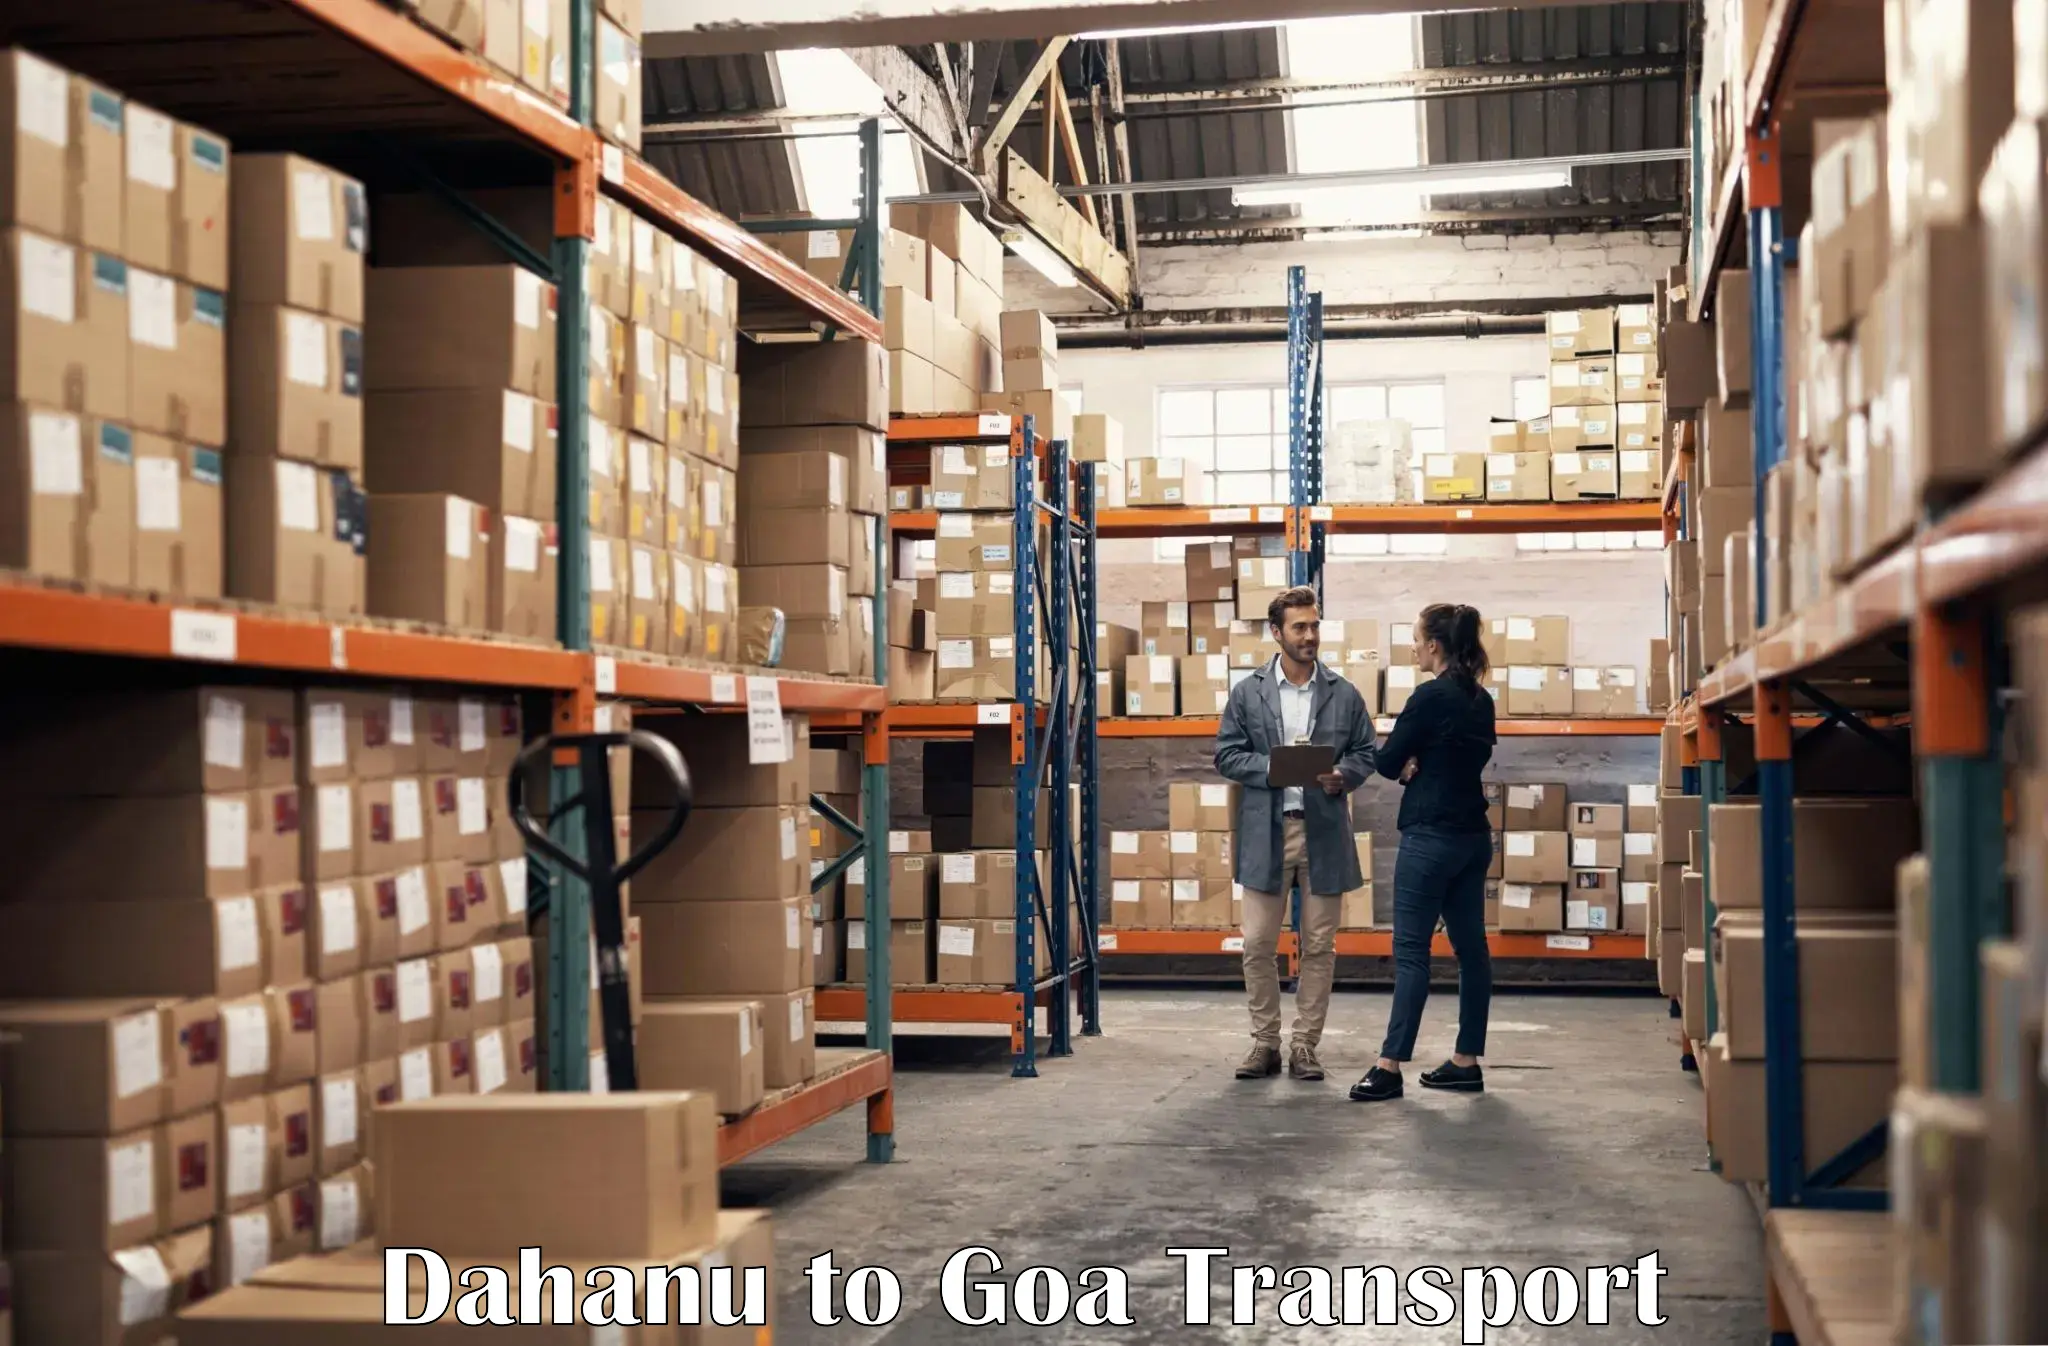 Cargo transport services Dahanu to Vasco da Gama